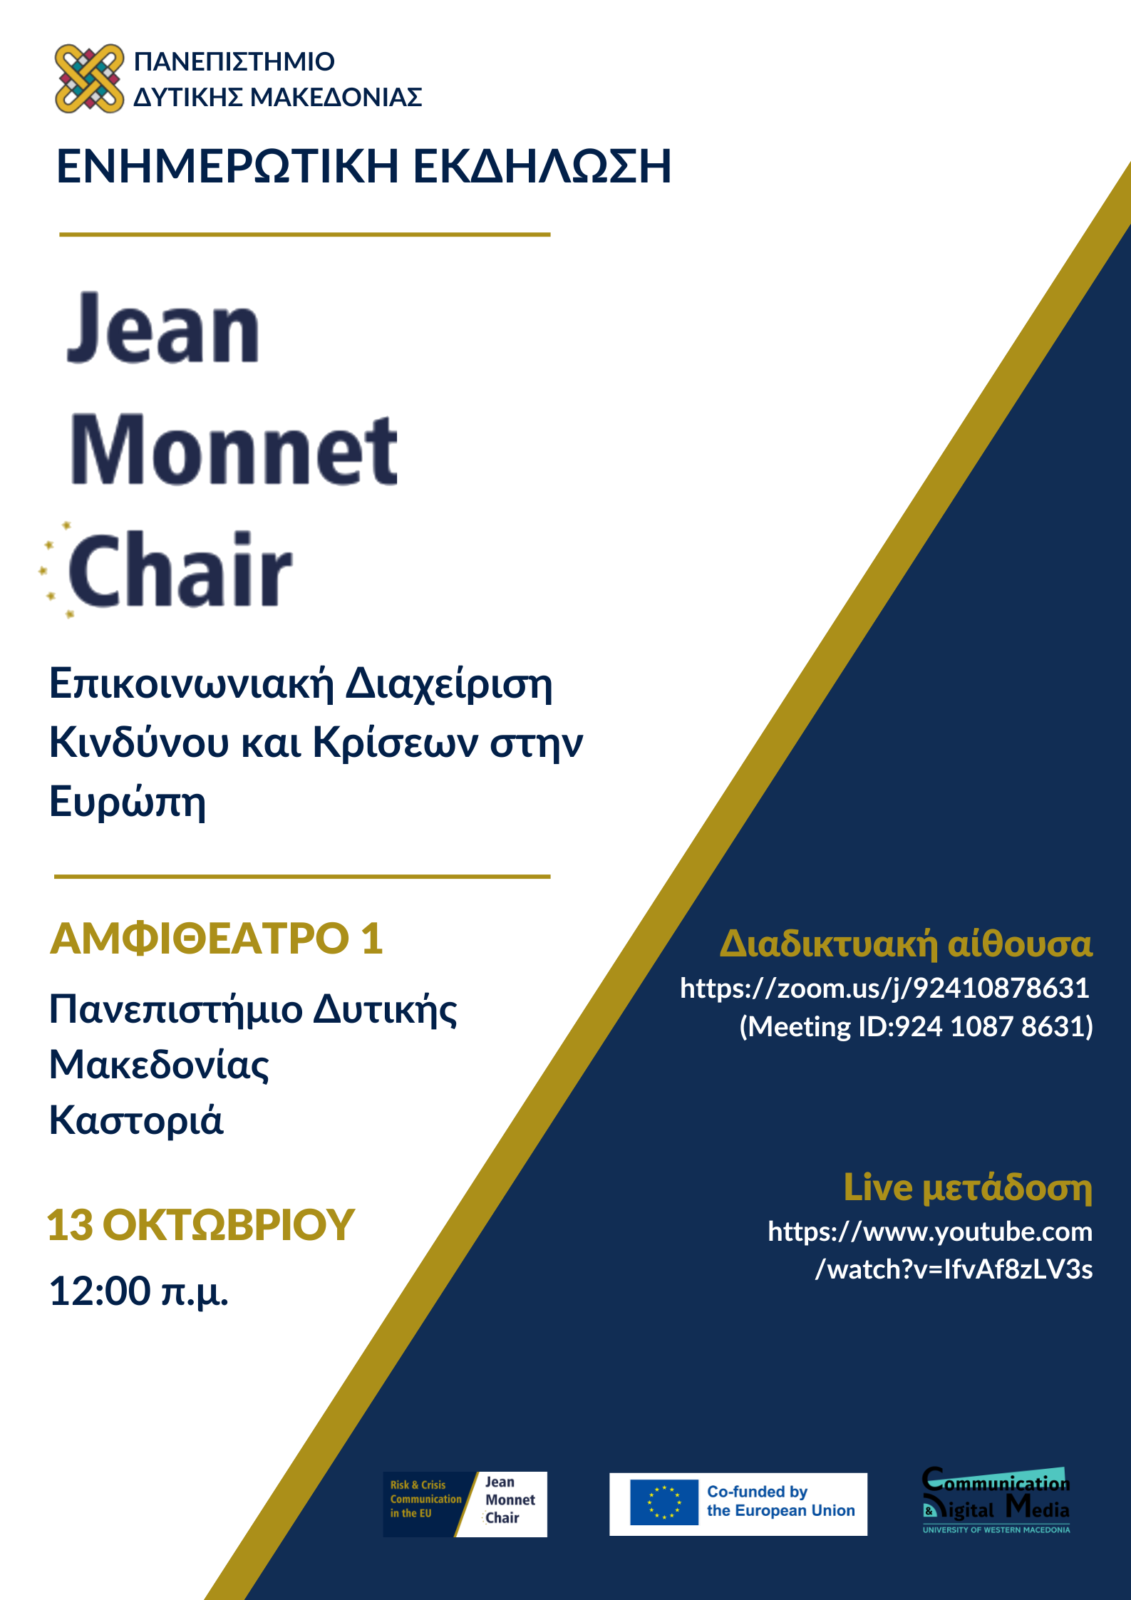 Πανεπιστήμιο Δυτικής Μακεδονίας :  Eνημερωτική Εκδήλωση ”Jean Monnet Chair” στην Επικοινωνιακή Διαχείριση Κινδύνου και  Κρίσεων στην Ευρώπη